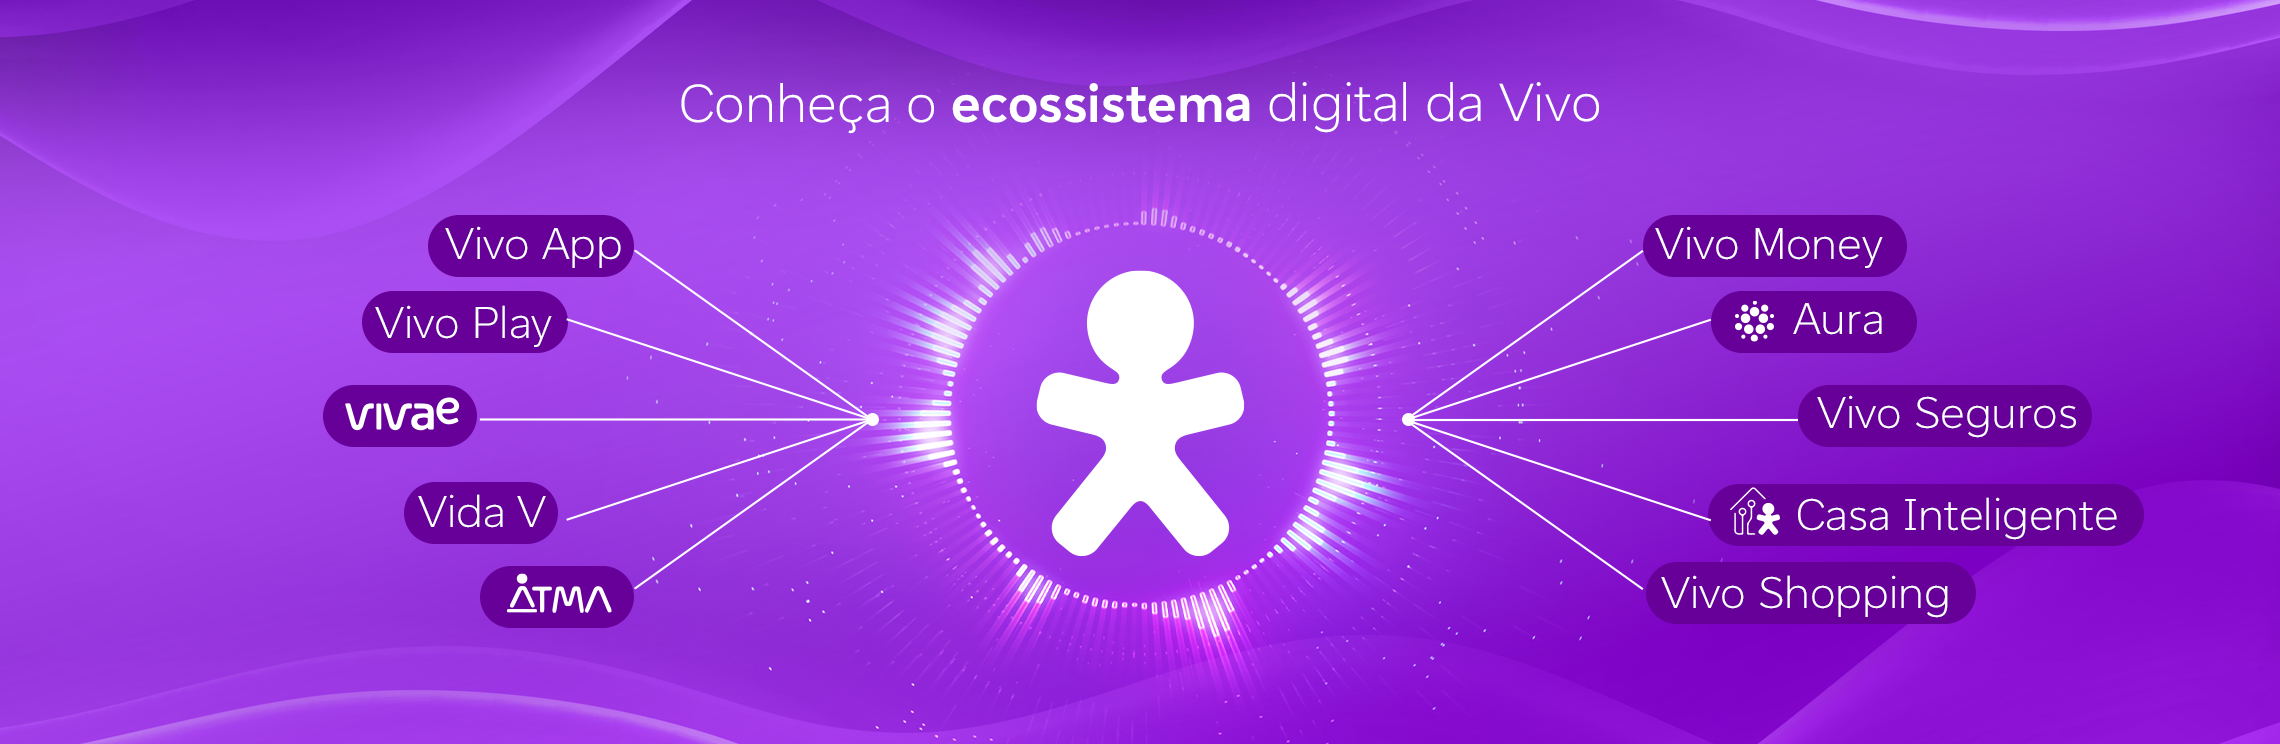 banner com o logo da Vivo no centro e a apresentação com ícones de todos os serviços que a empresa oferece